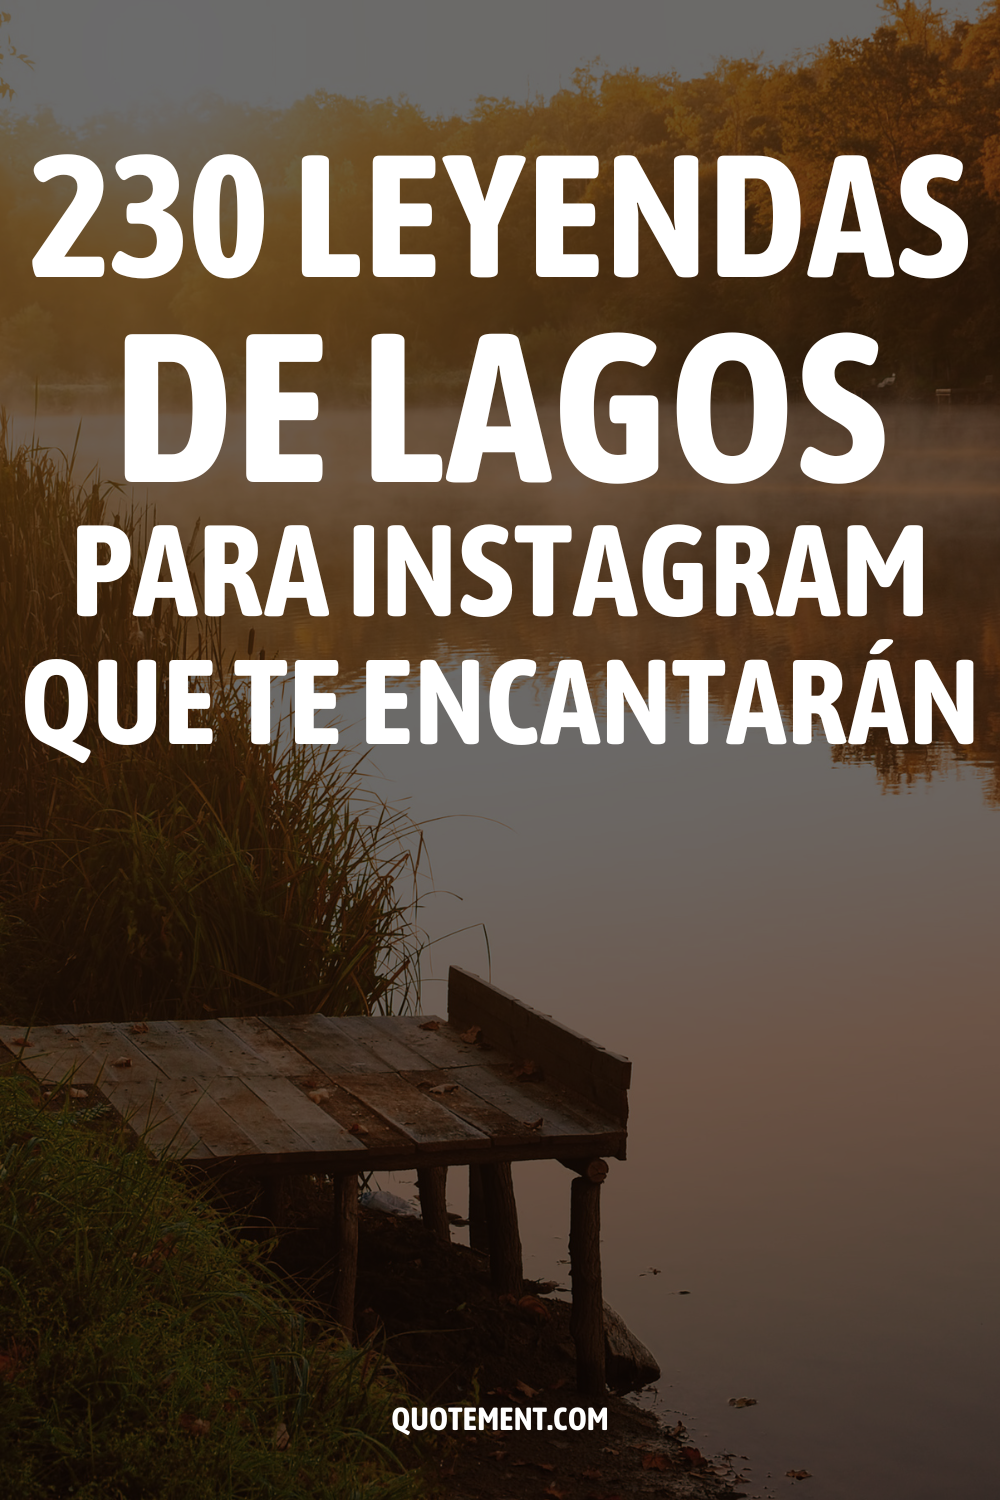 230 leyendas de lagos para Instagram que te encantarán